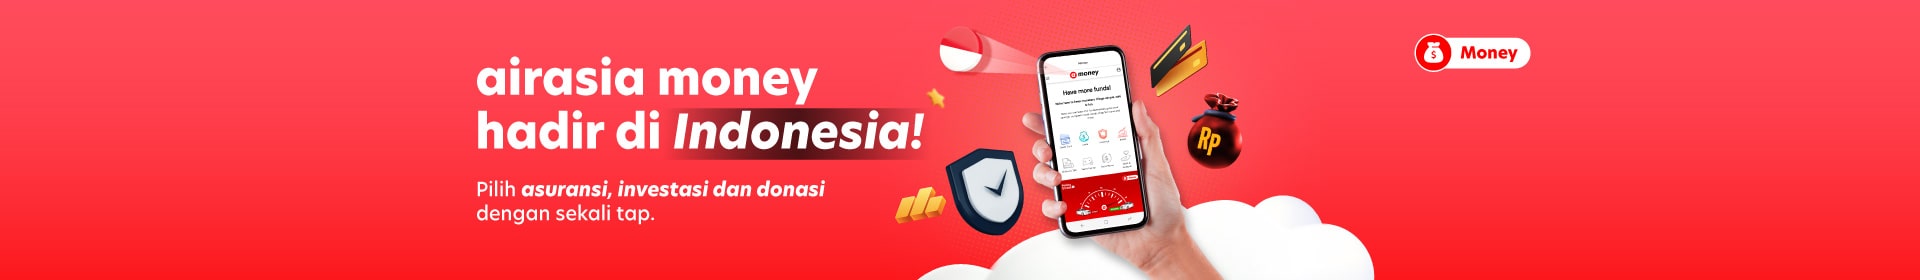 airasia Money Hadir di Indonesia!